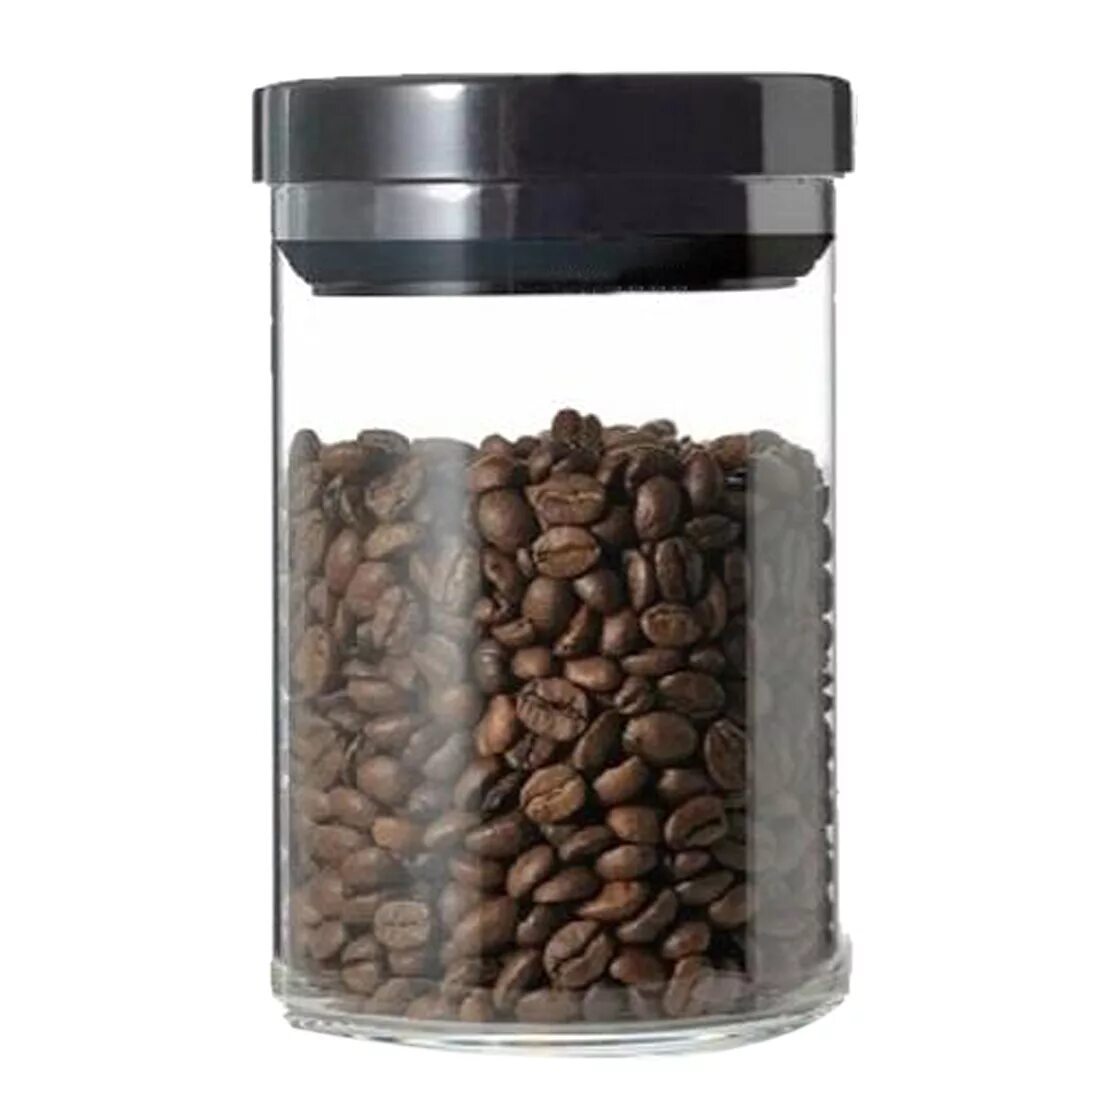 Банка для кофе. Банки для зернового кофе. Кофейные зерна в стеклянной банке. Банка для зернового кофе. Баночка для кофе